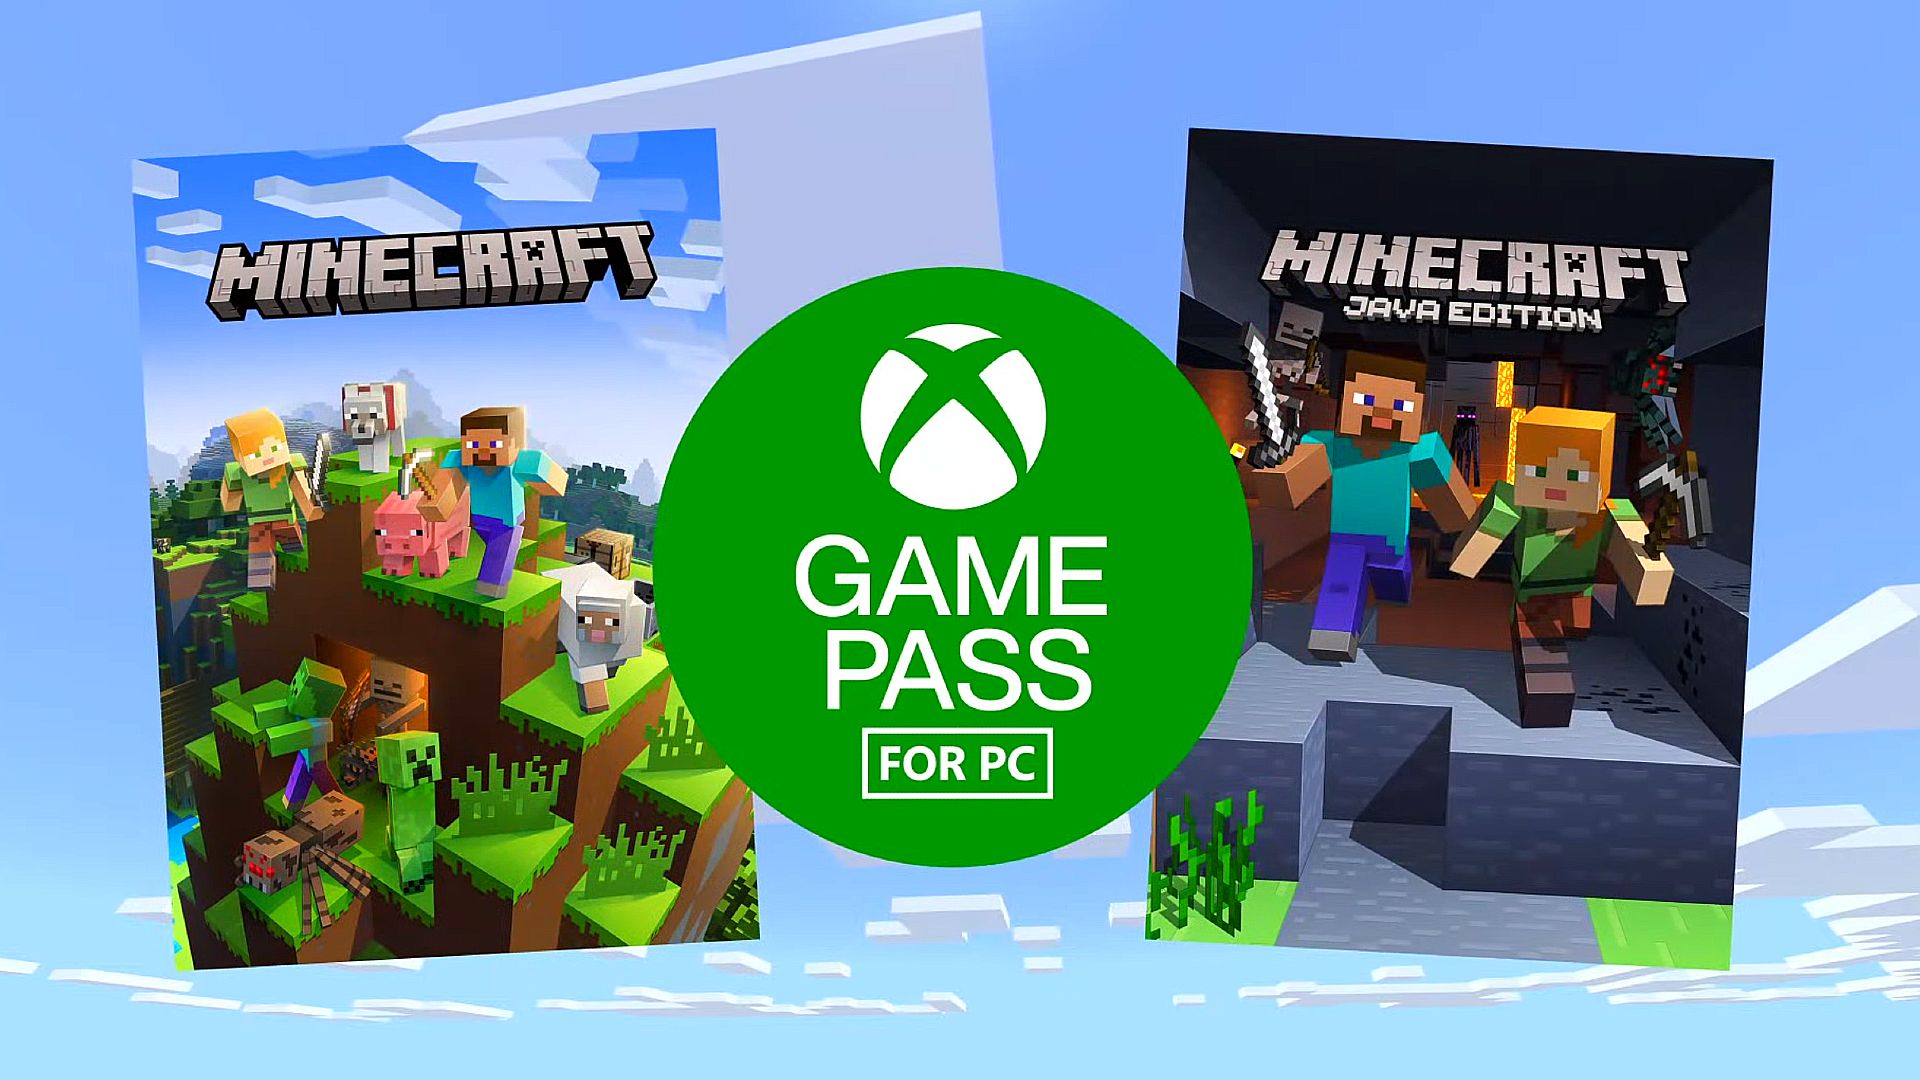 ጥሩው የ Minecraft ስሪት ወደ Game Pass PC እየመጣ ነው፣ ግን GTA የለም፡ ሳን አንድሪያስ